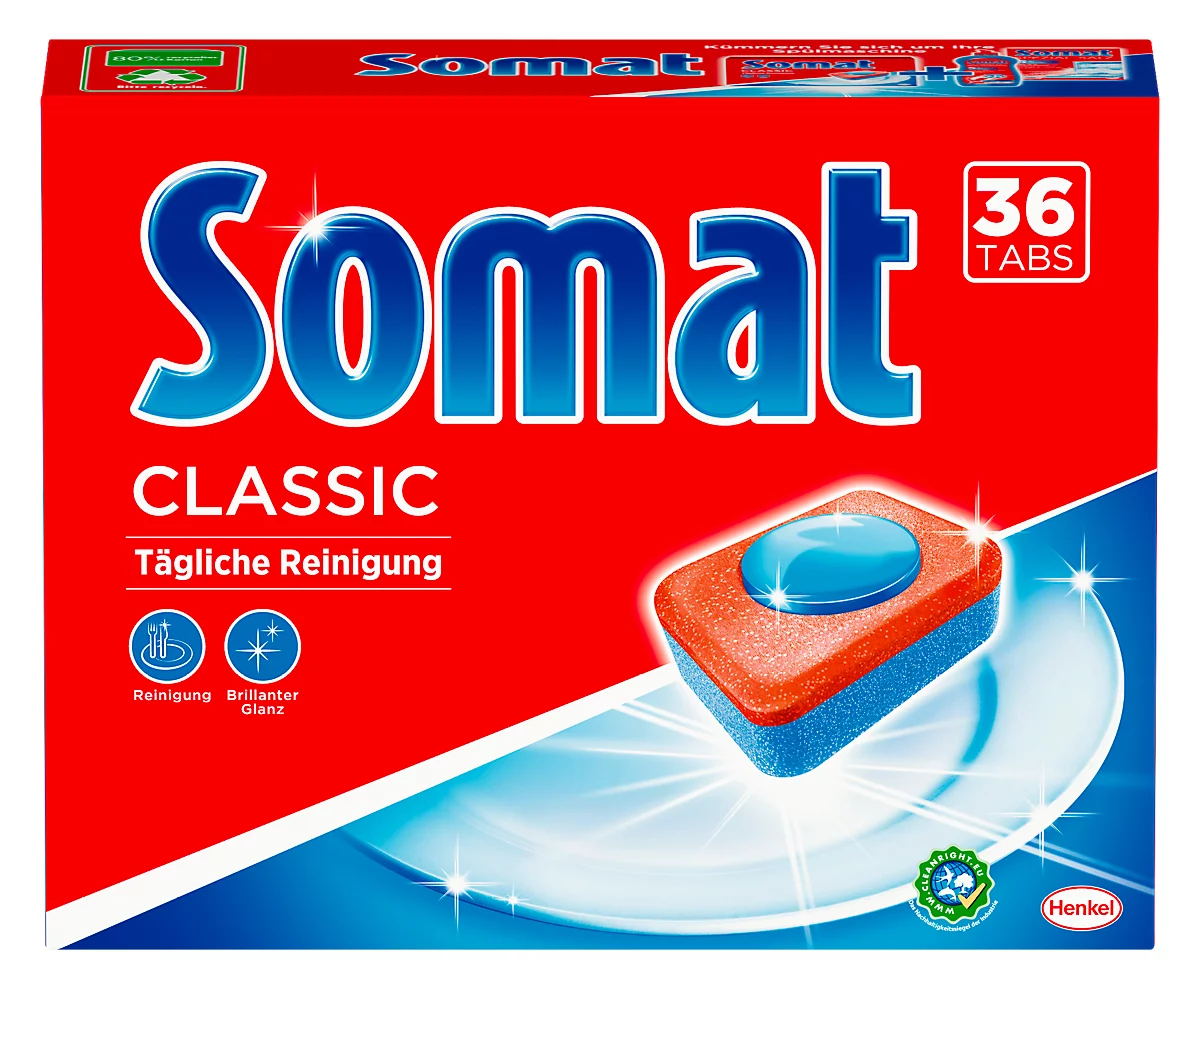 Lavavajillas Somat Classic 1, con poder disolvente de la grasa, núcleo de poder y ácido cítrico, sin fosfatos, azul-rojo, 36 pastillas en caja